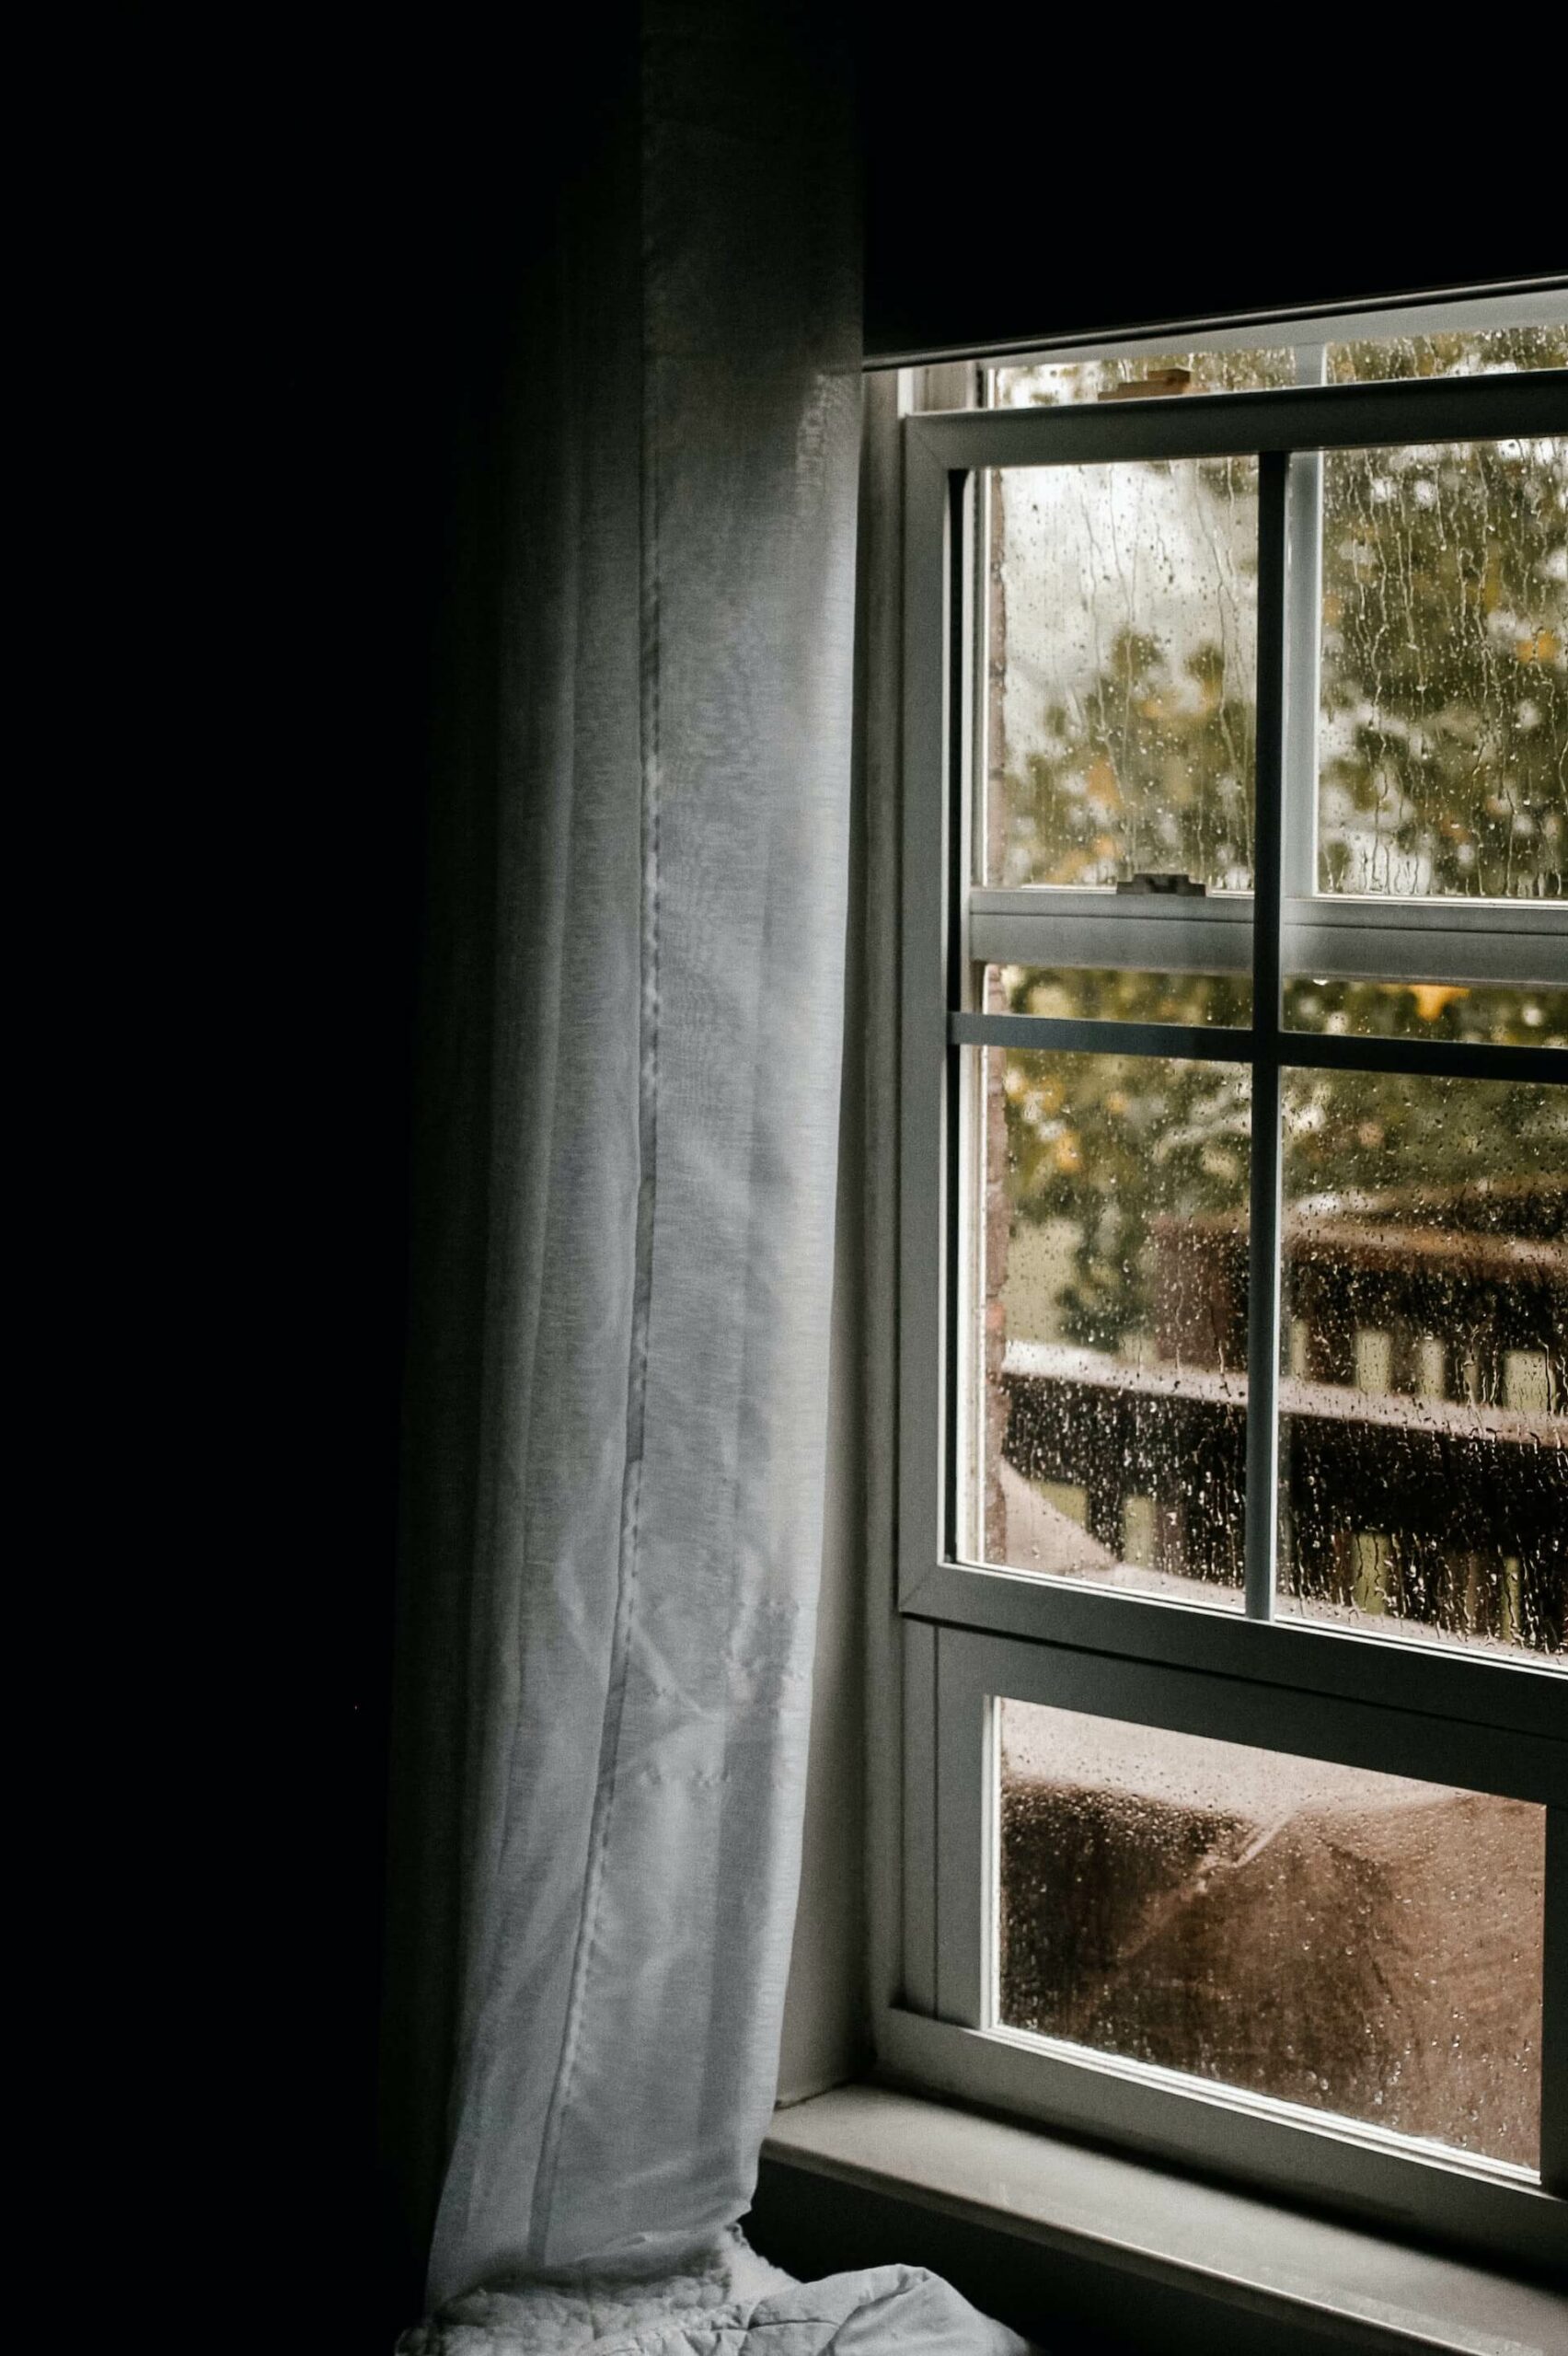 Fenster undicht, was tun? – 5 einfache Lösungen